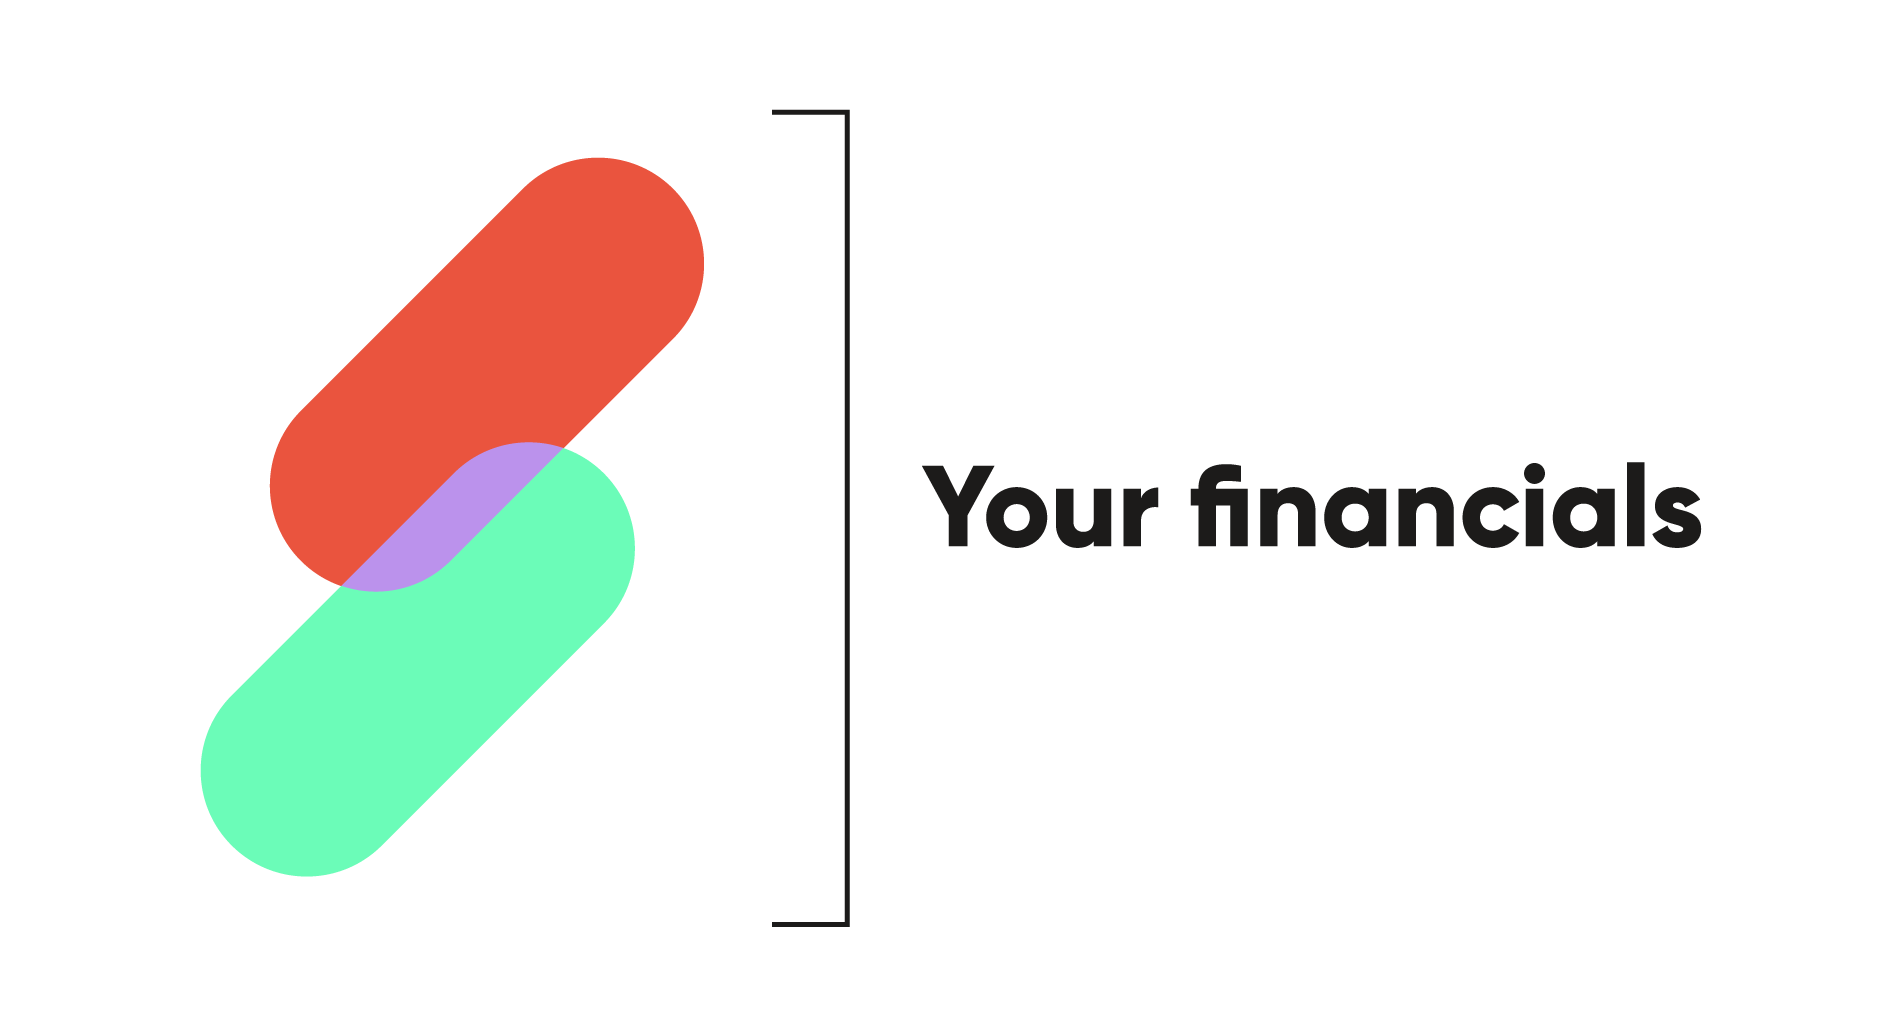 Your finances